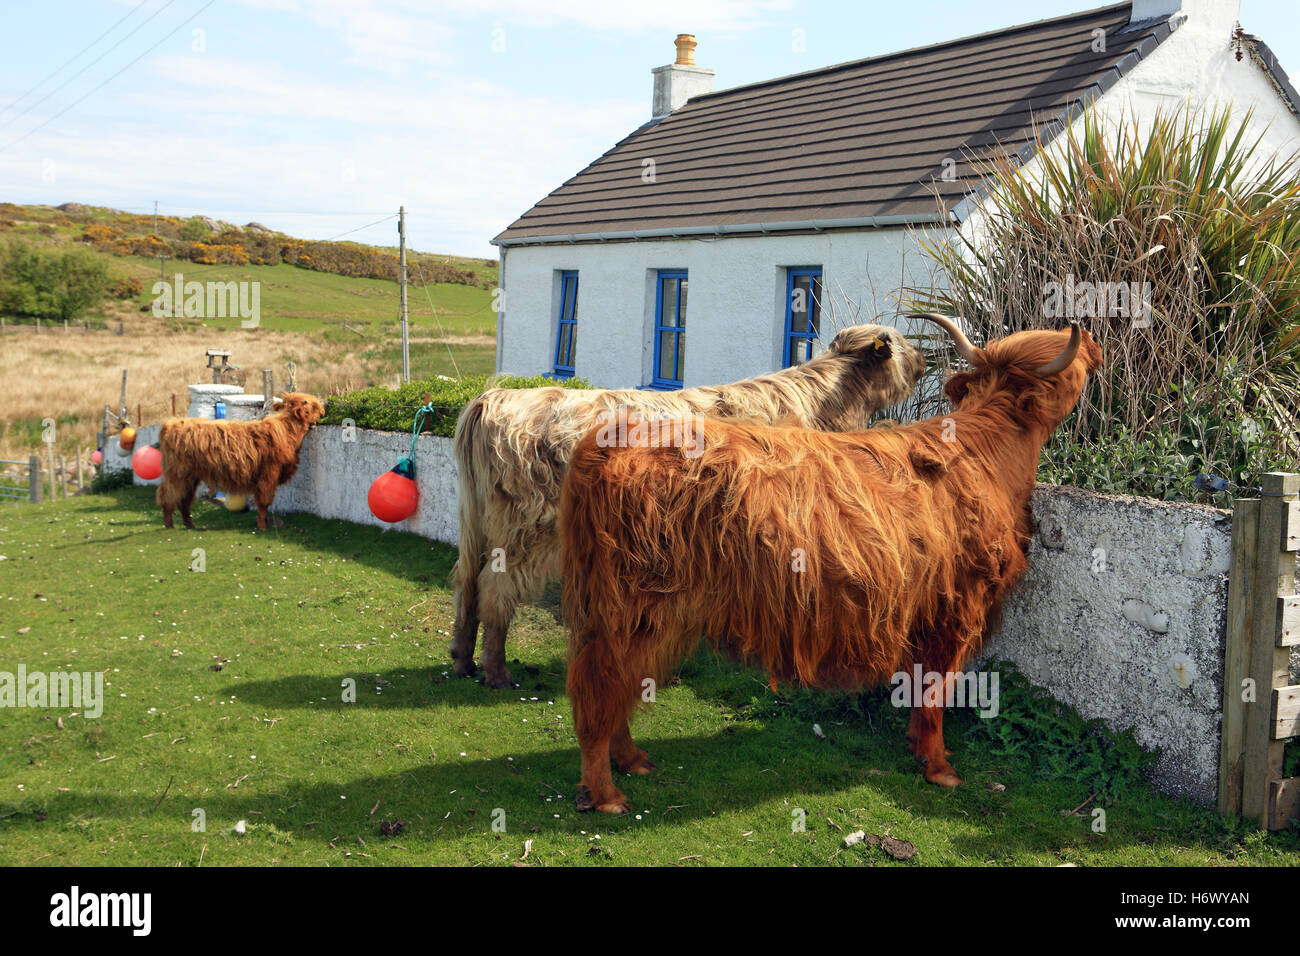 Les vaches Highland sur des pâturages de manger les plantes et de couverture d'un Chalet jardin dans l'île de Mull Fionnphort, Ecosse Banque D'Images